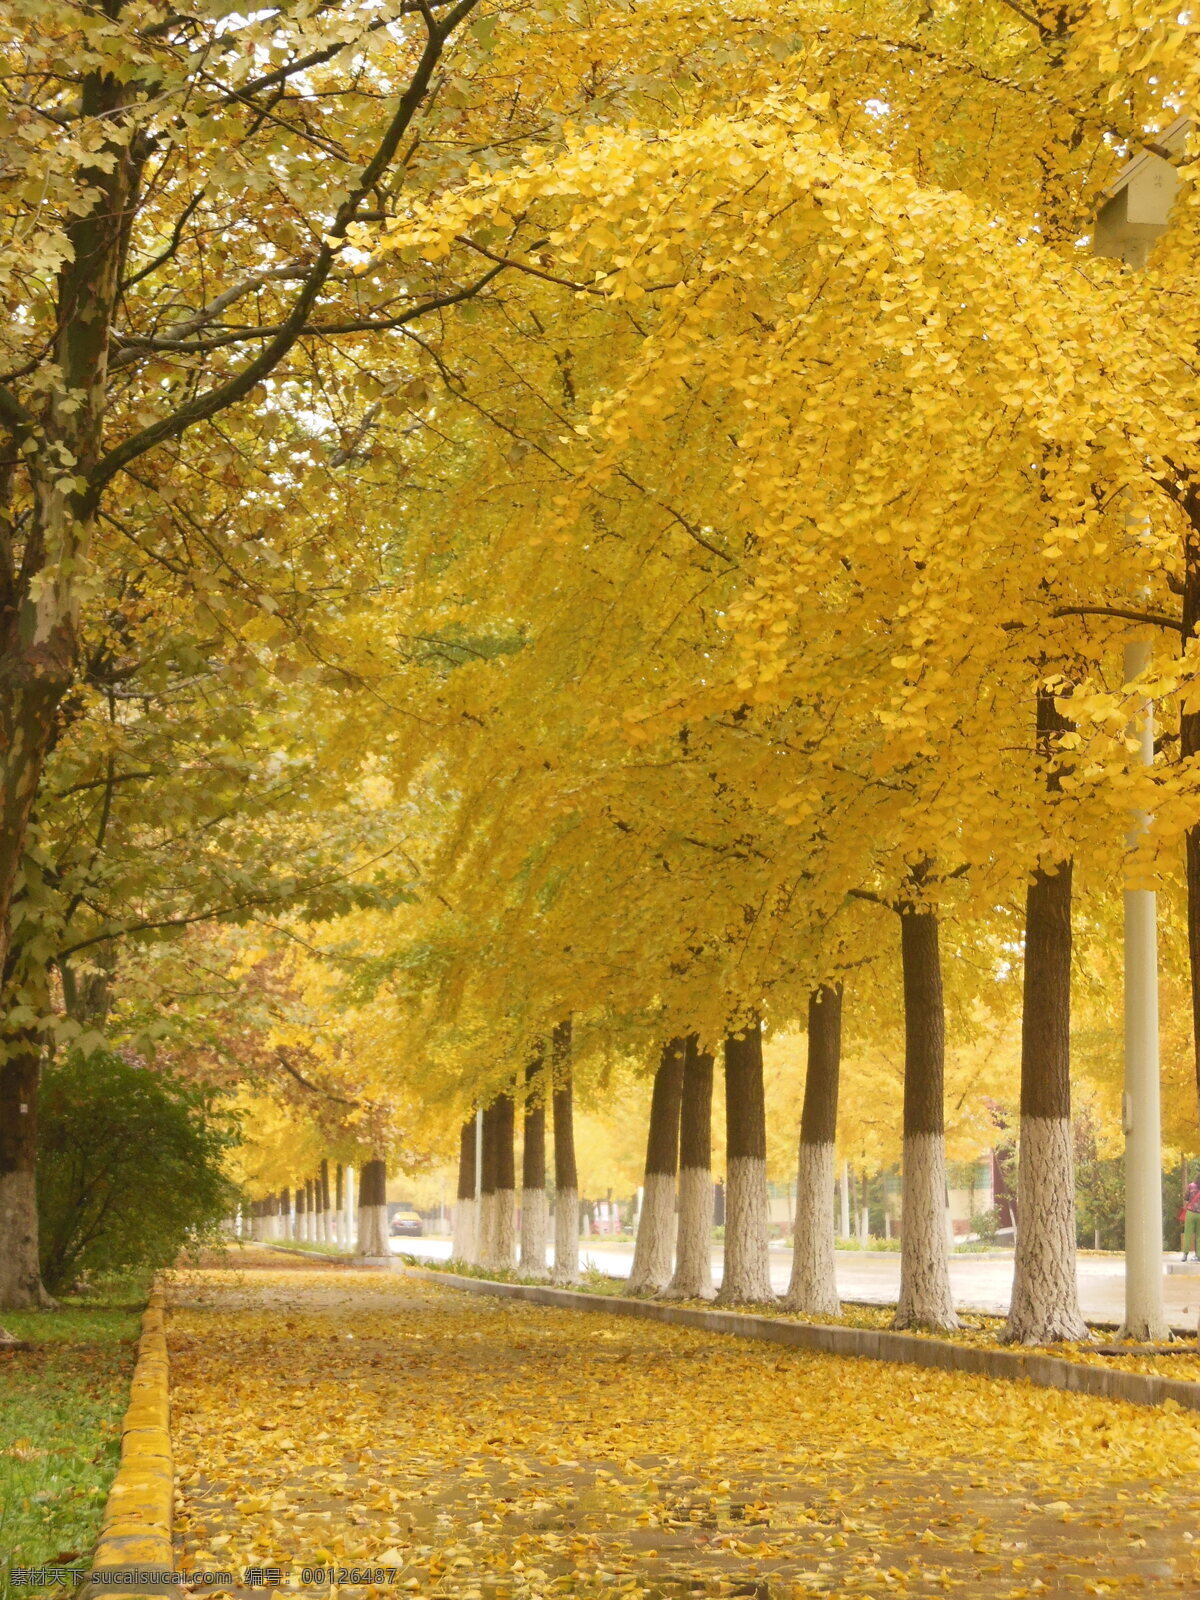 银杏林 银杏树 黄色 秋天 树叶 叶子 秋季 道路 路面 风景 秋景图 树木树叶 生物世界